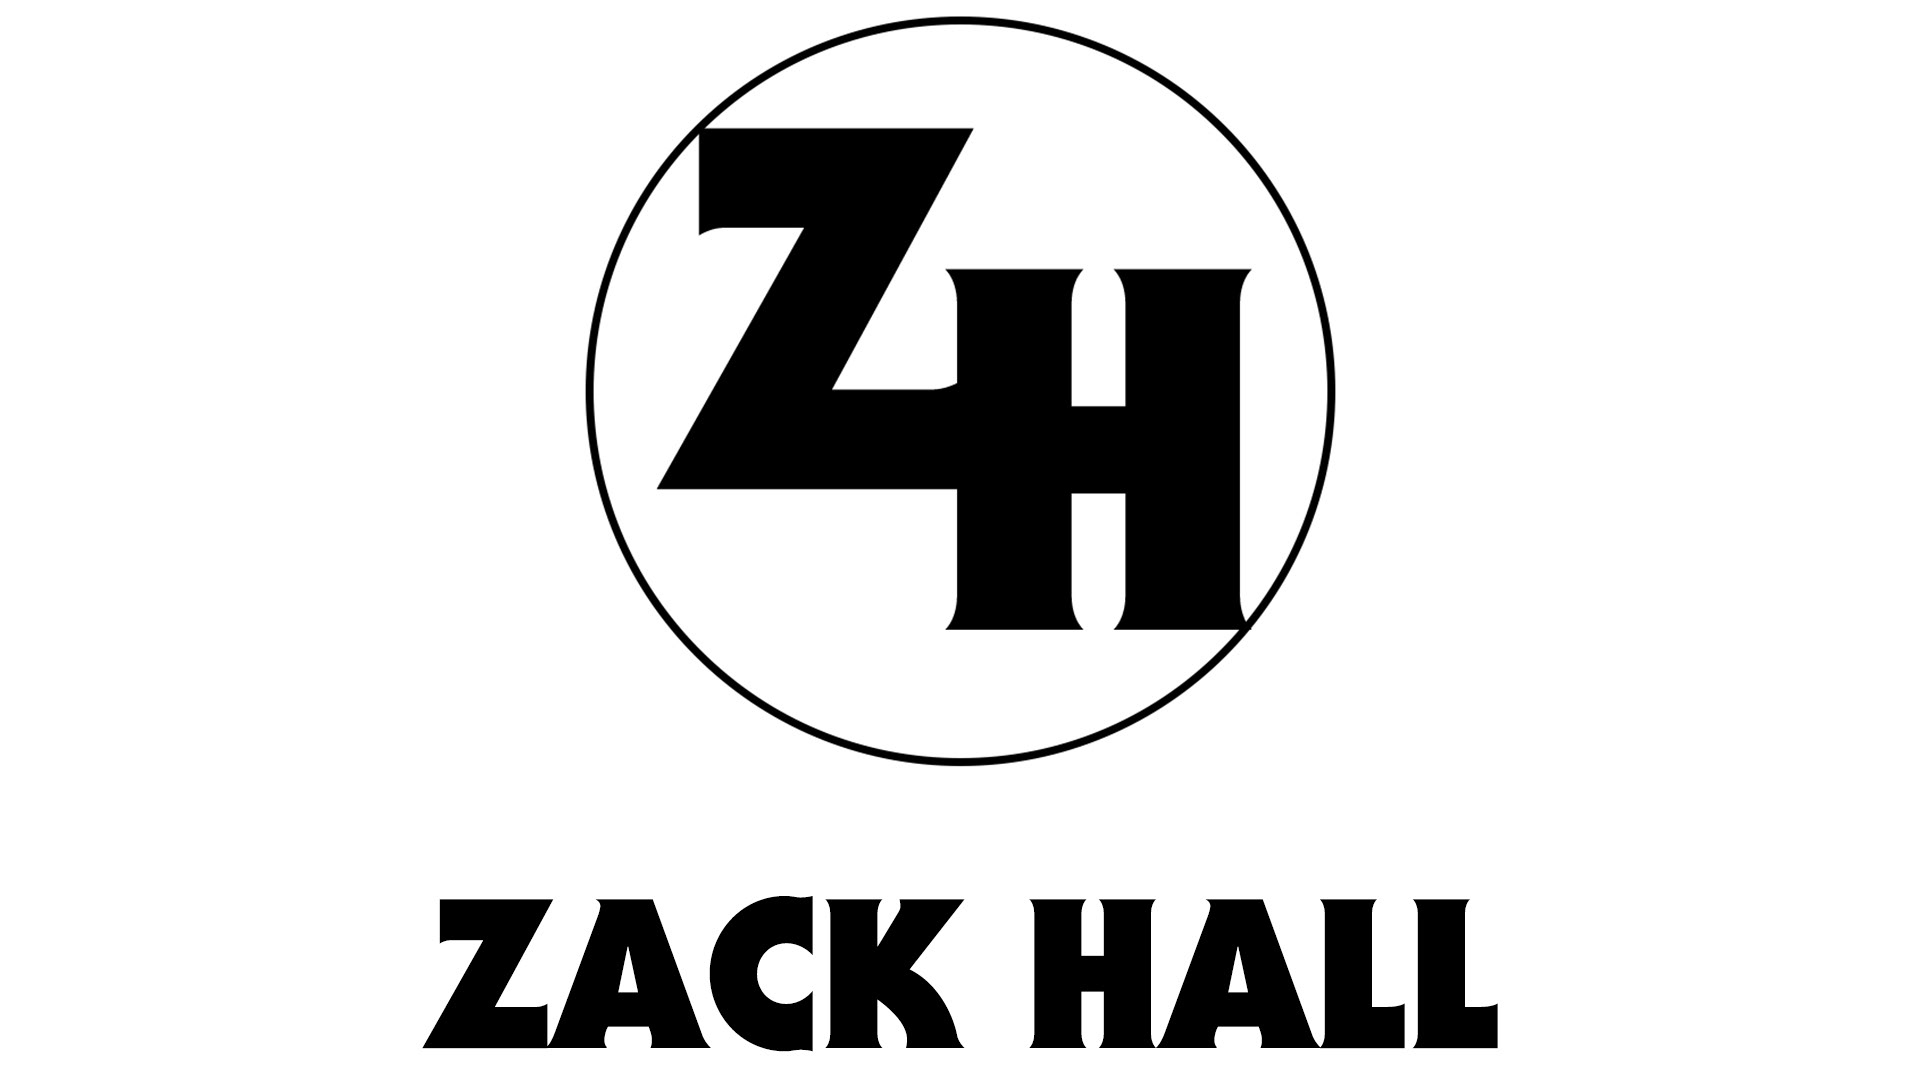 Zack Hall